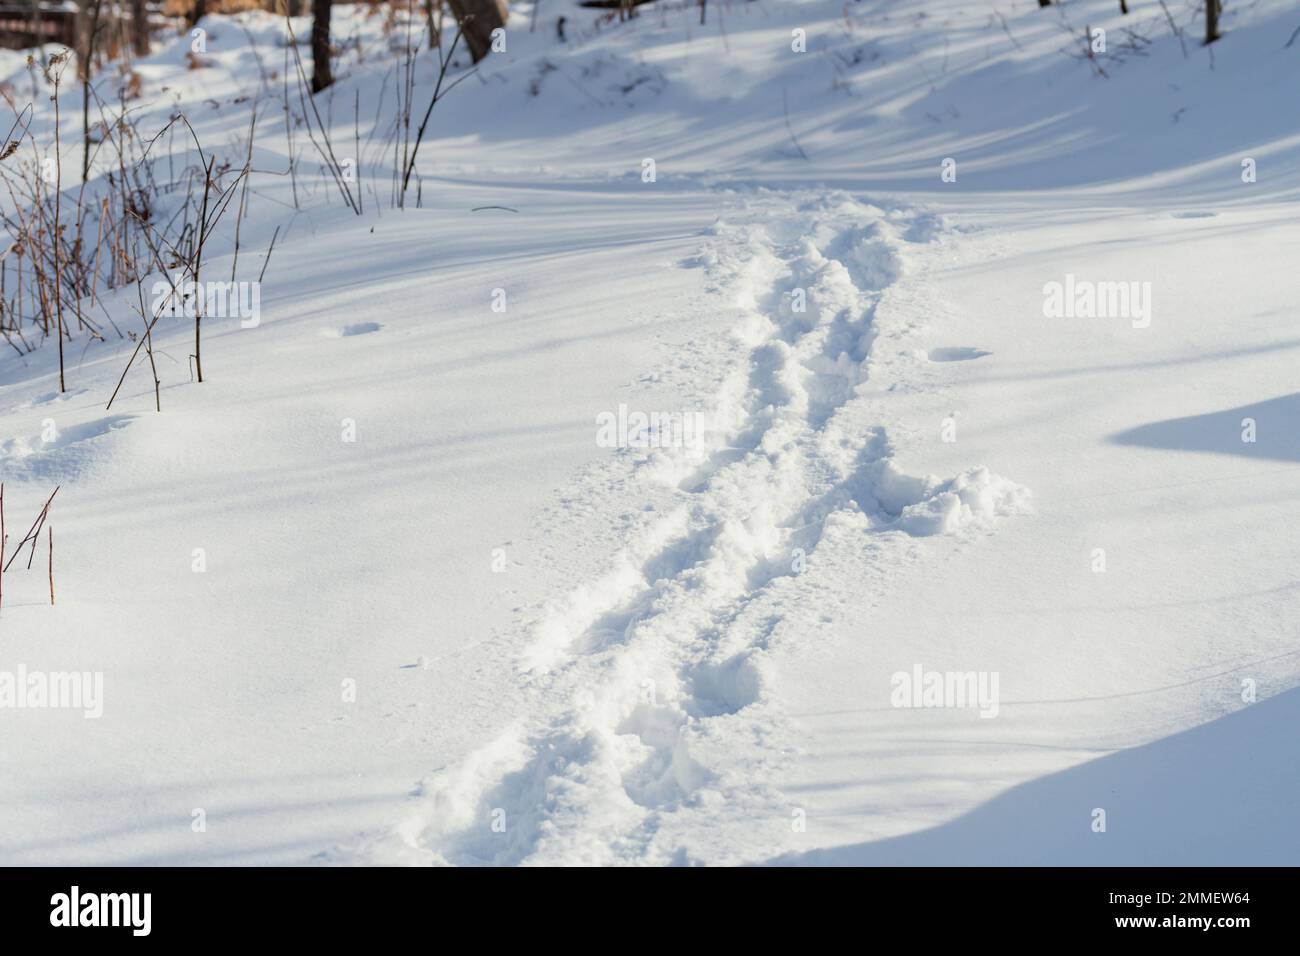 promenade hivernale dans la neige temps froid activités les gens à l'extérieur sentier pédestre dans la neige Banque D'Images